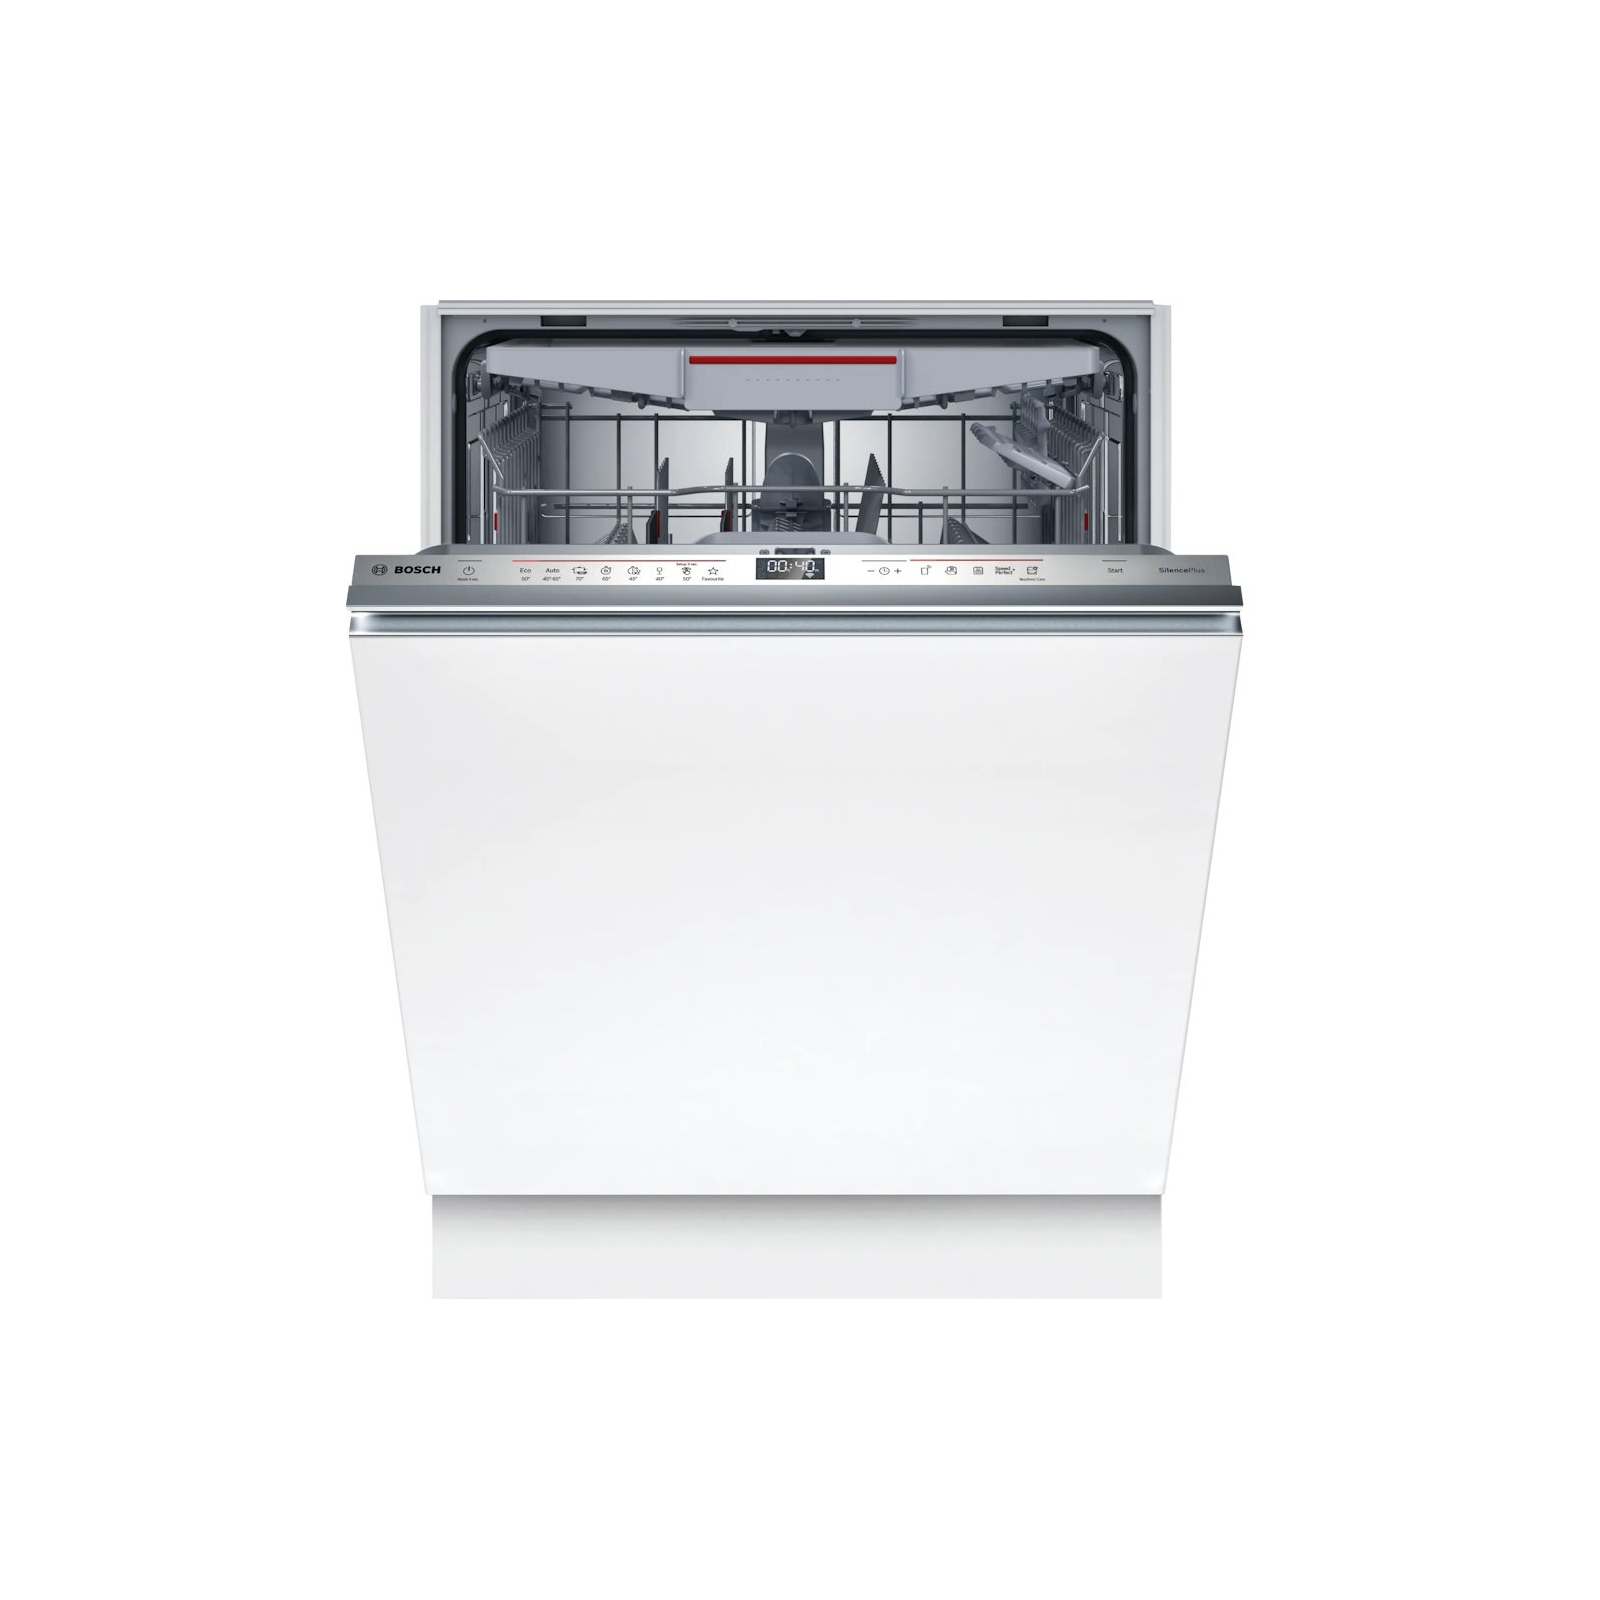 Посудомоечная машина Bosch SMV6EMX51K